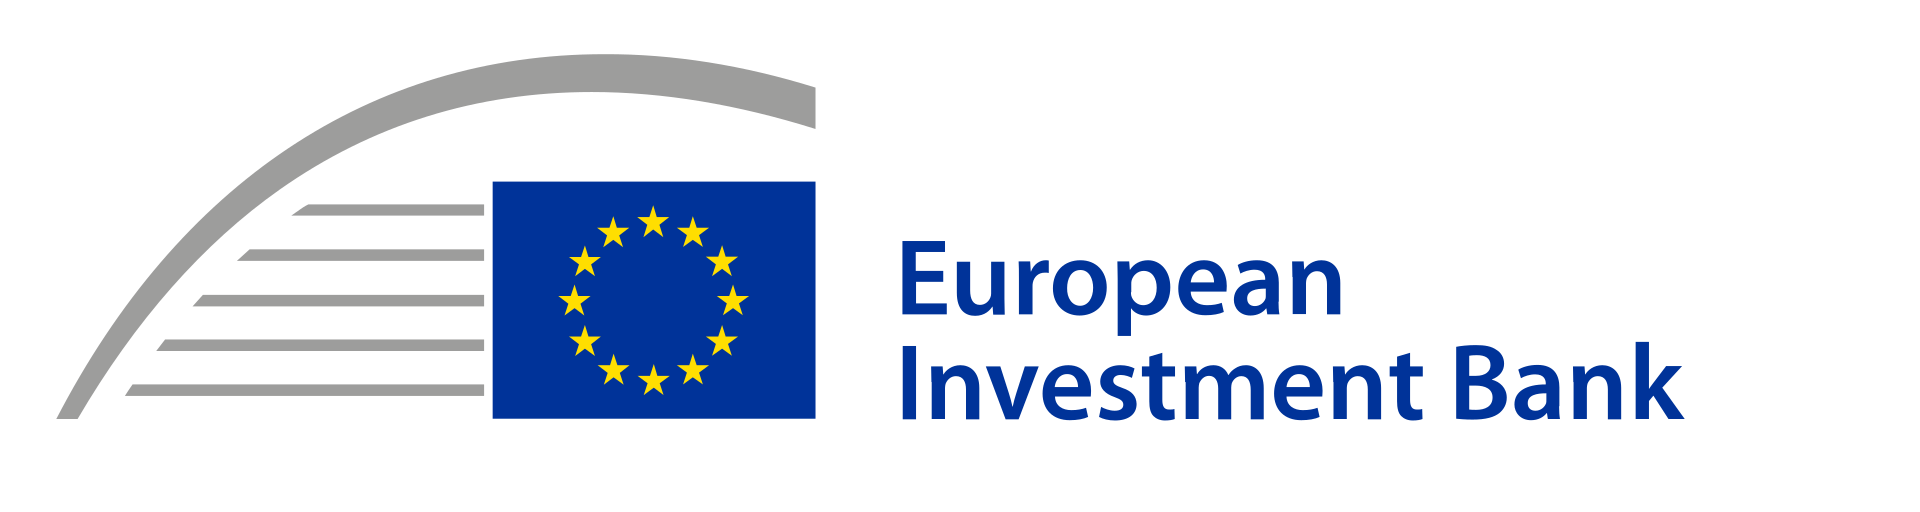 Европейский инвестиционный банк. European investment Bank лого. Кокошник с узорами рисунок 2 класс. Логотип EIB.